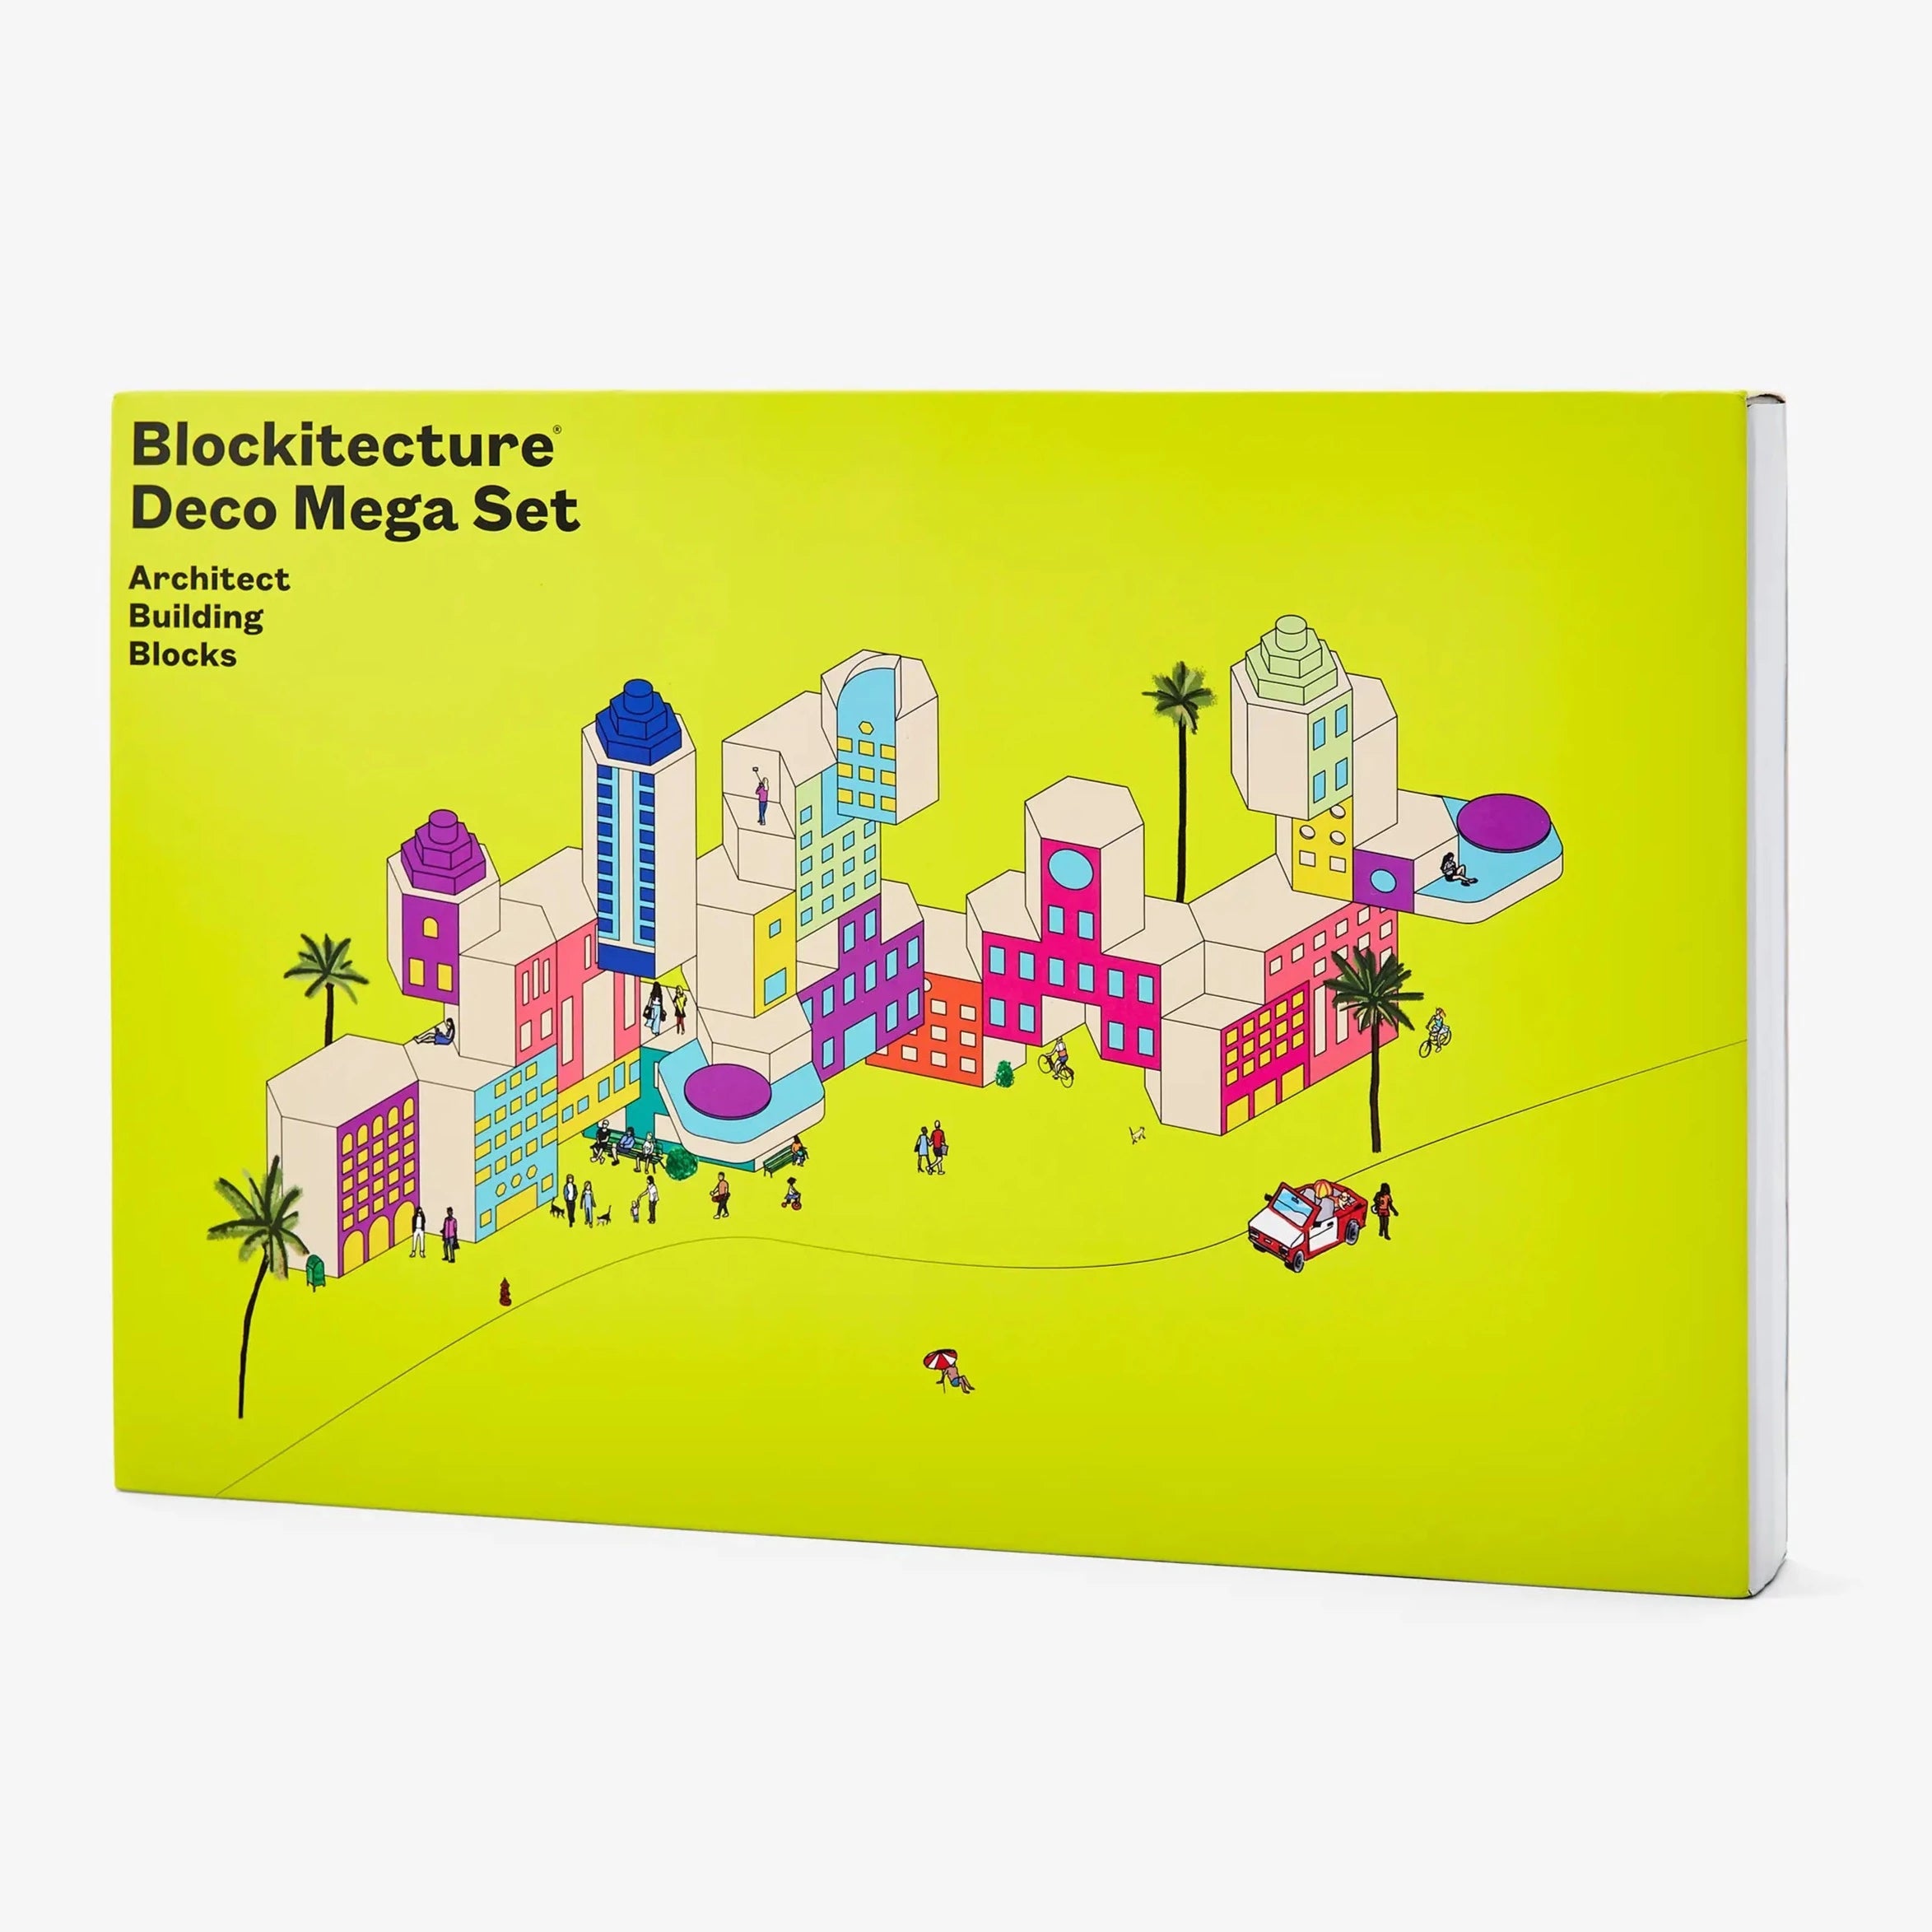 Blockitecture: Deco Mega Set